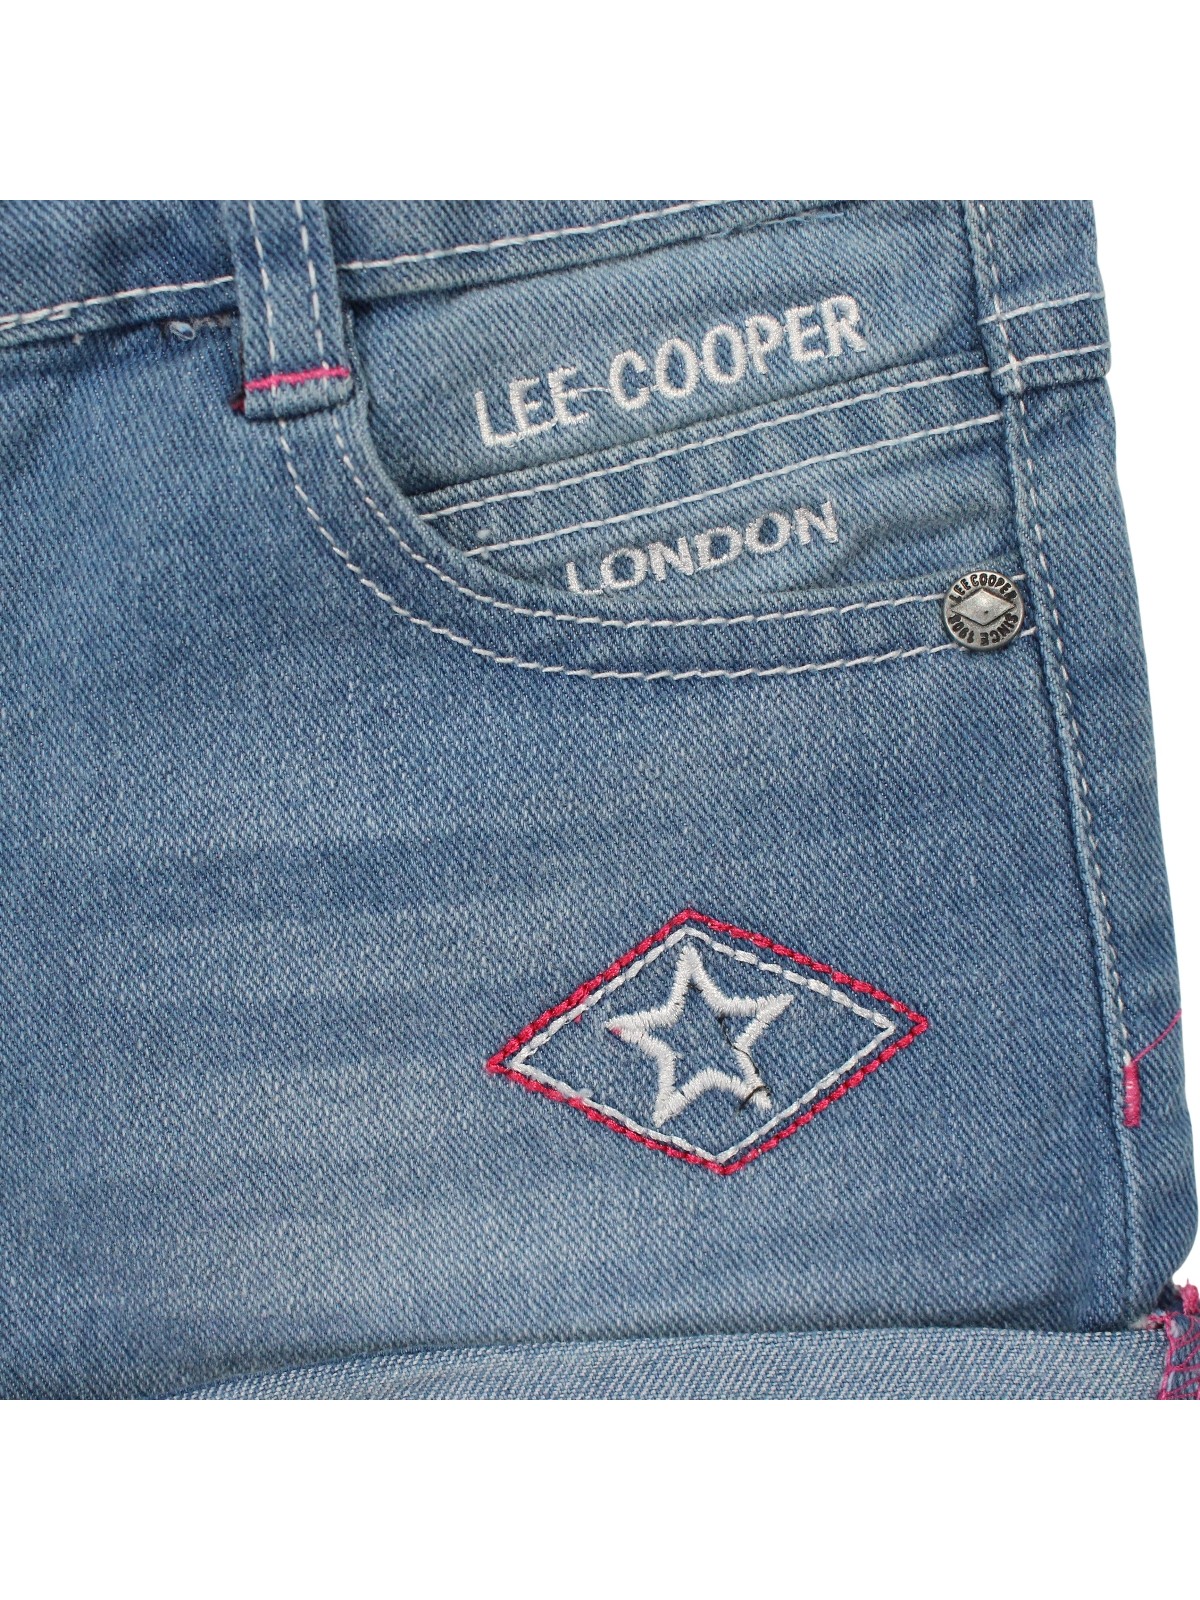 Lee Cooper korte broek 